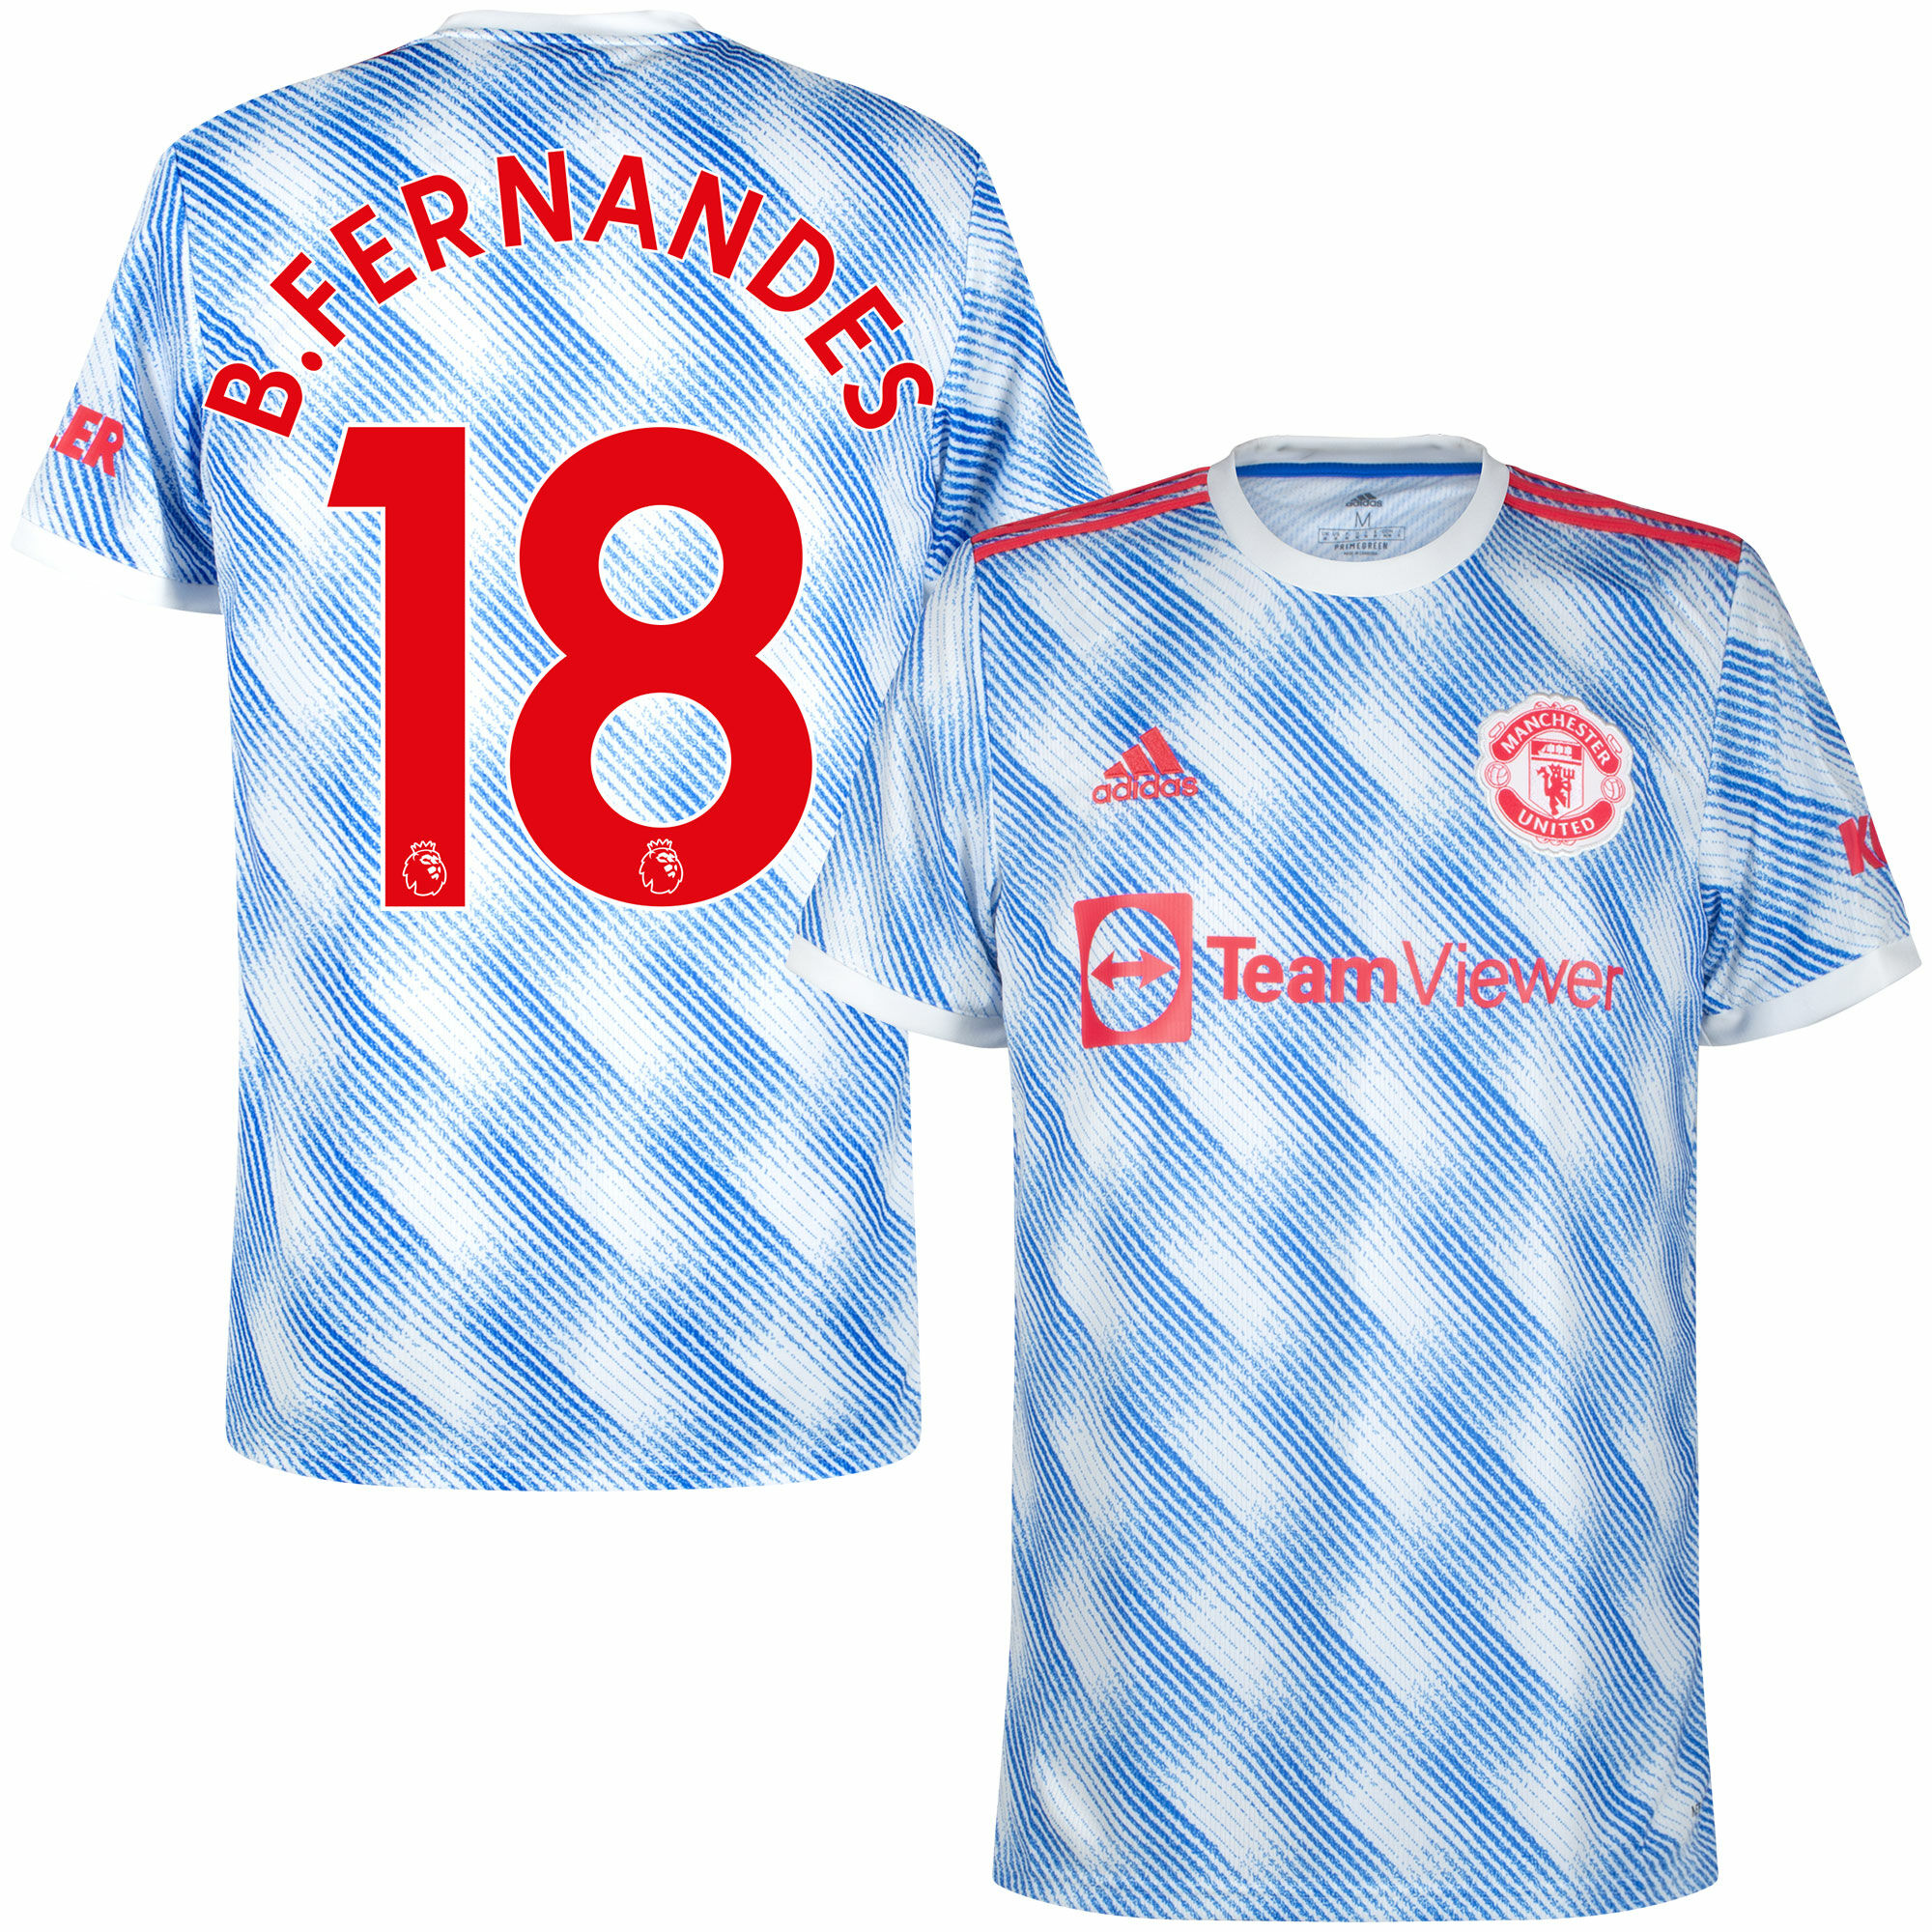 Manchester United - Dres fotbalový - číslo 18, Bruno Fernandes, Premier League, sezóna 2021/22, bílý, venkovní